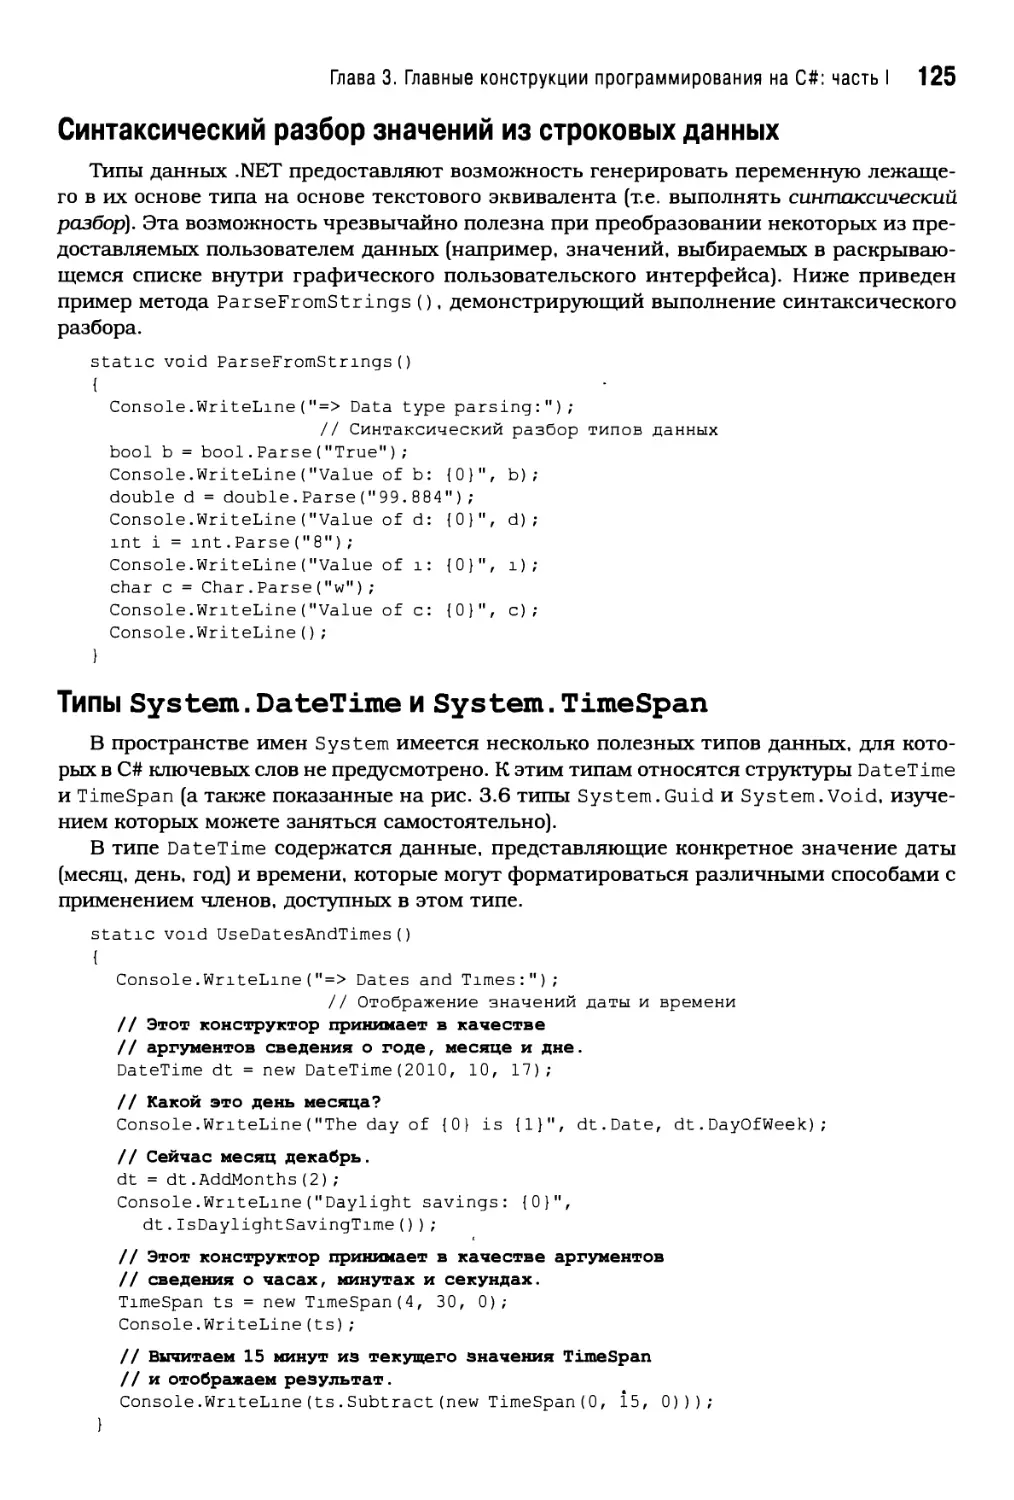 Синтаксический разбор значений из строковых данных
Типы System.DateTimeи System.TimeSpan